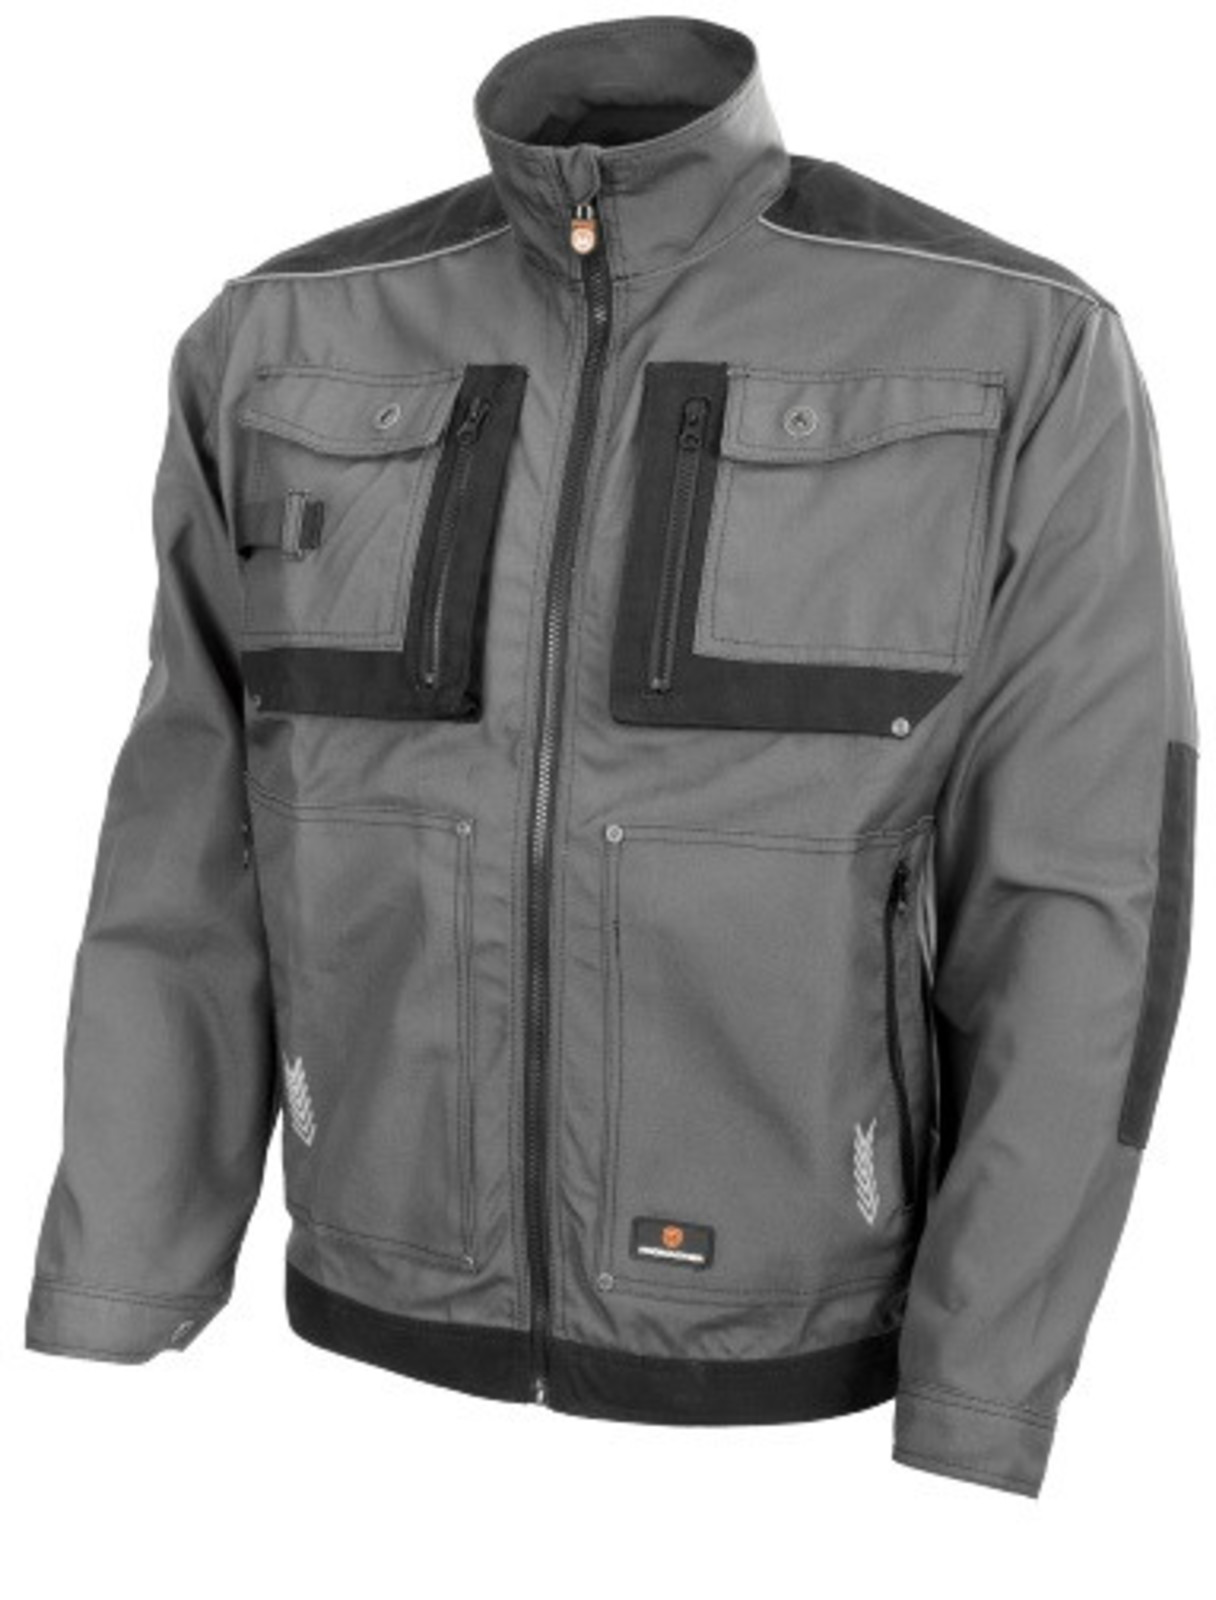 Odolná monterková bunda ProMacher Myron - veľkosť: 44-46, farba: tmavo šedá